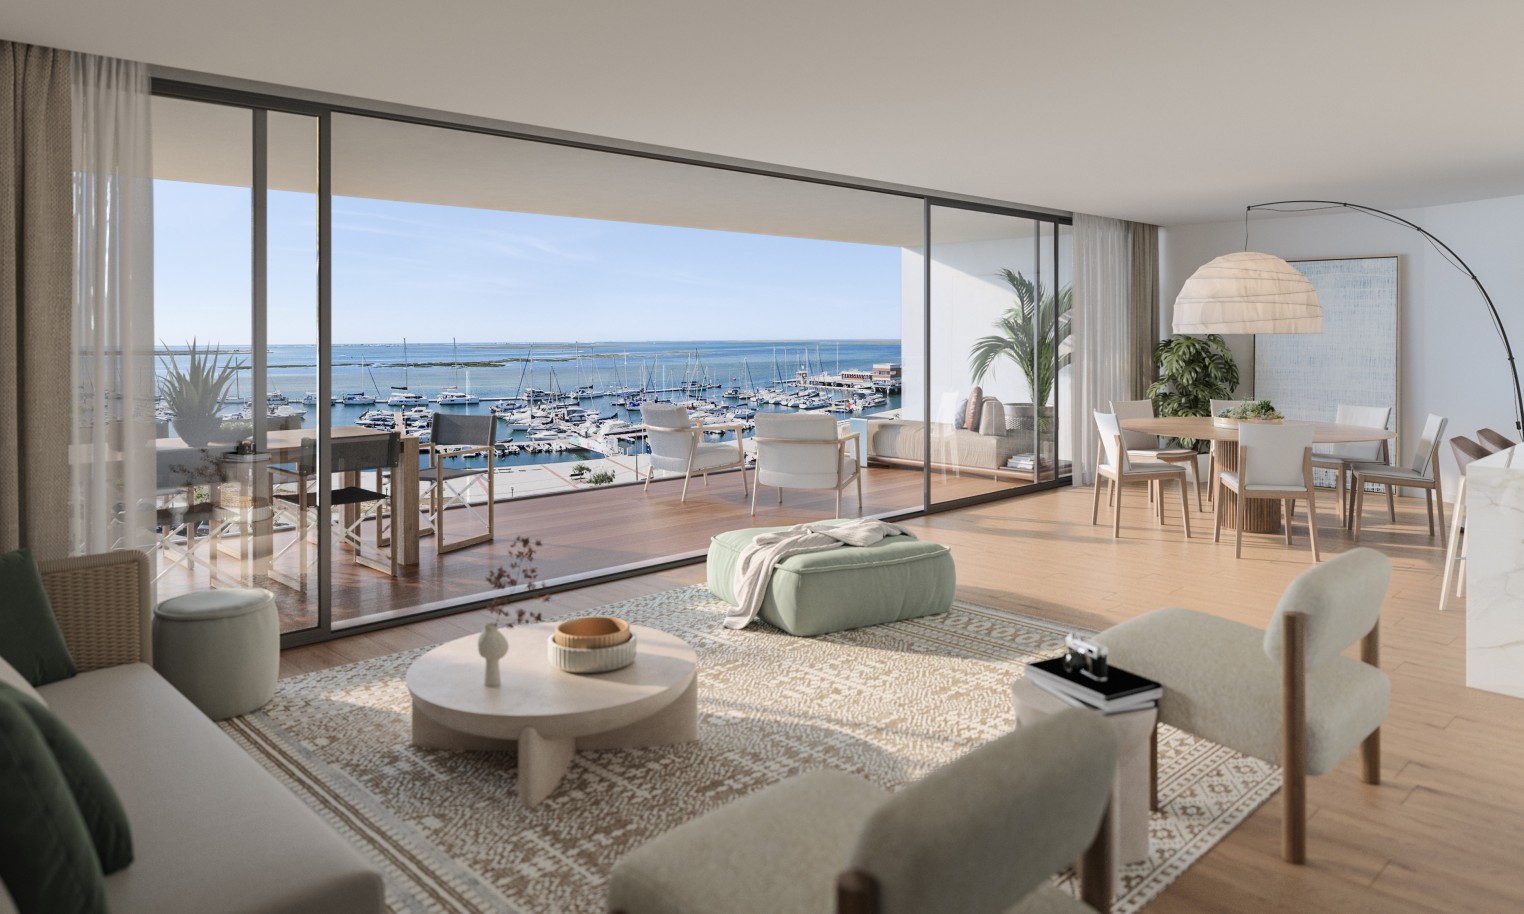 Pisos nuevos con vistas al mar, 1, 2 y 3 dormitorios, en venta en Olhão, Algarve_243894